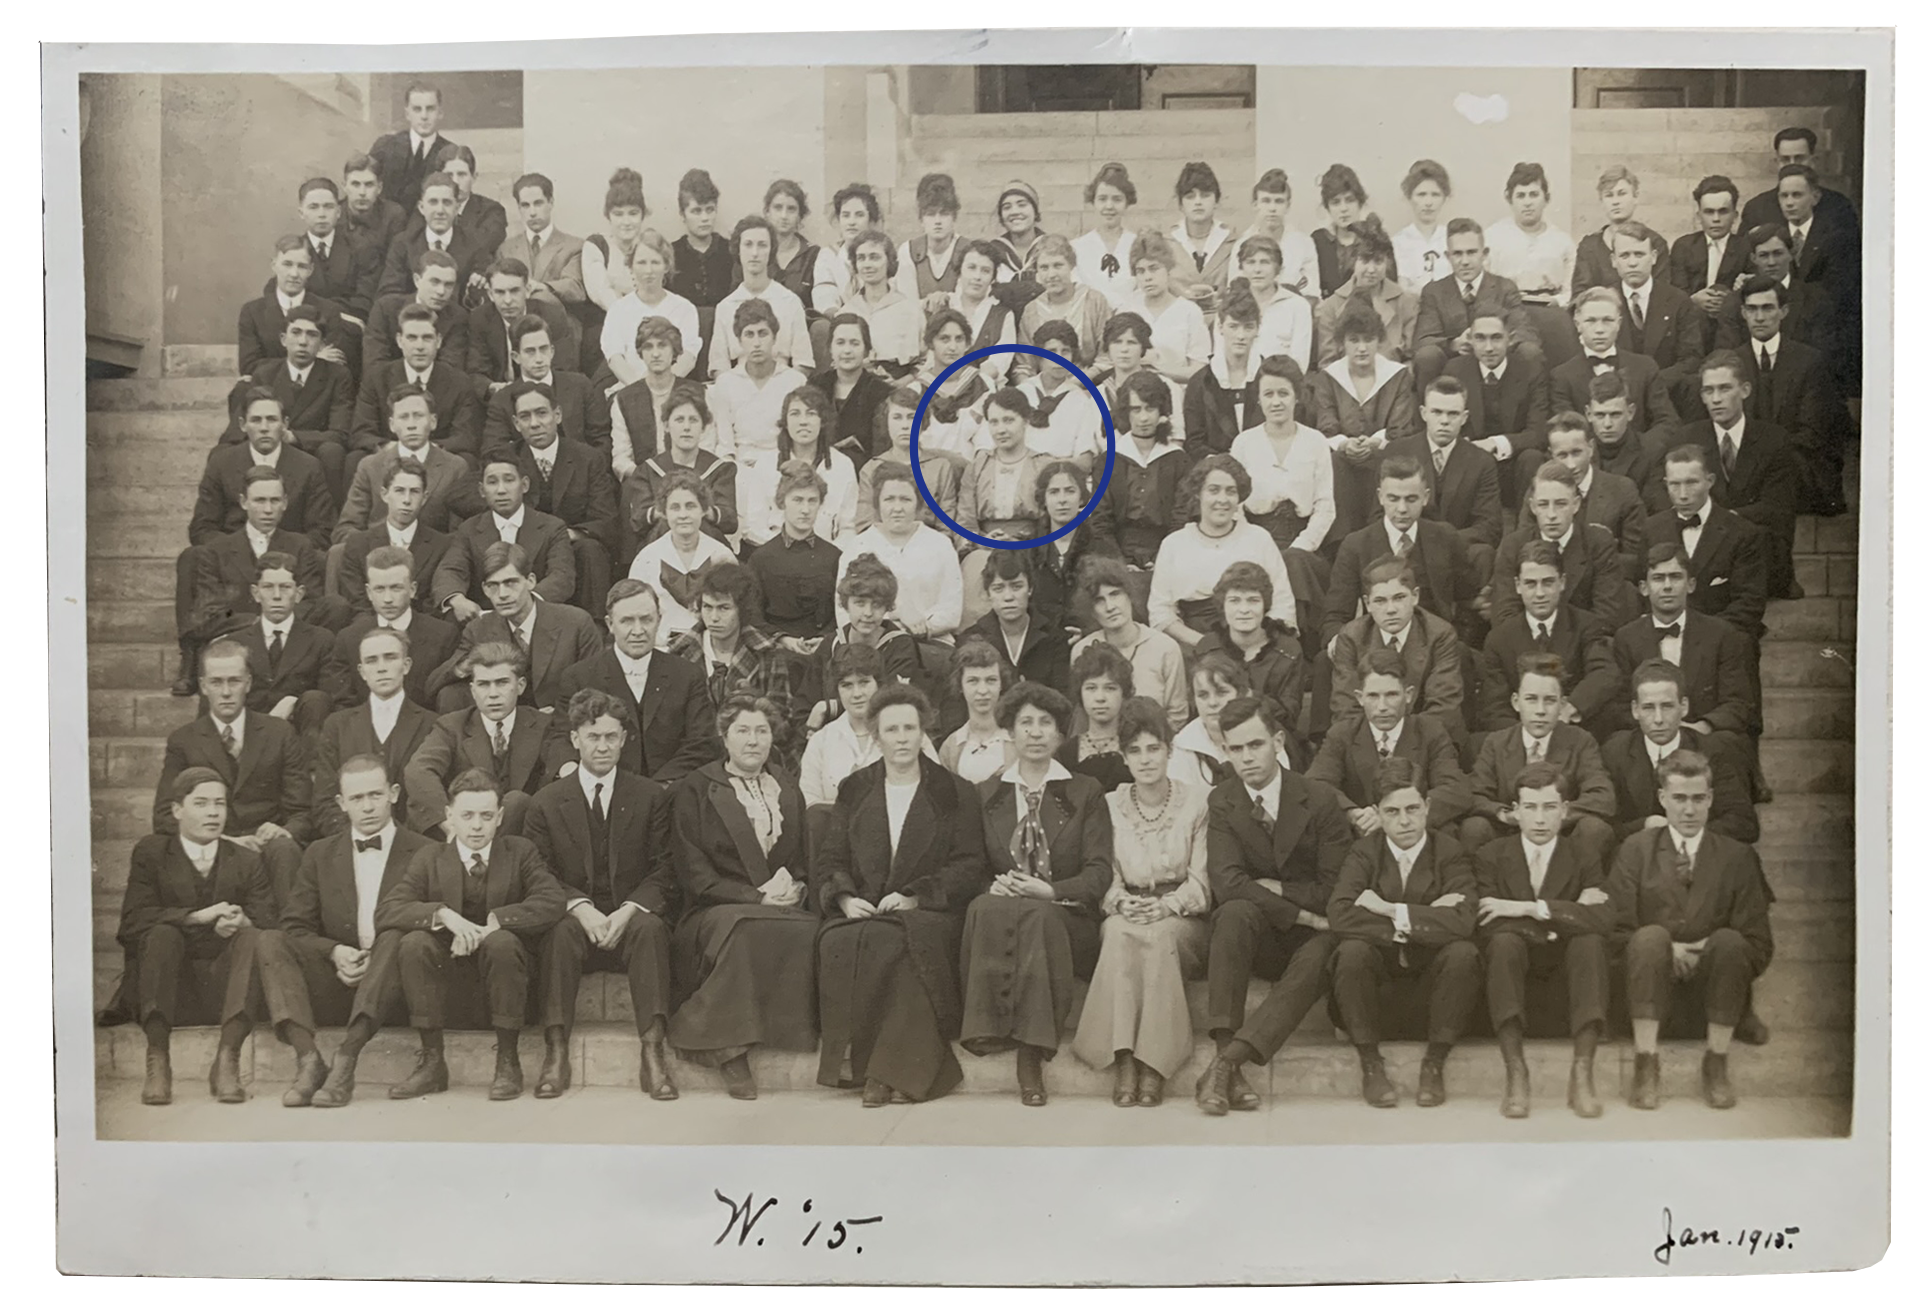 1915-WELLS-vida bula-poly high school scrapbook (2)a